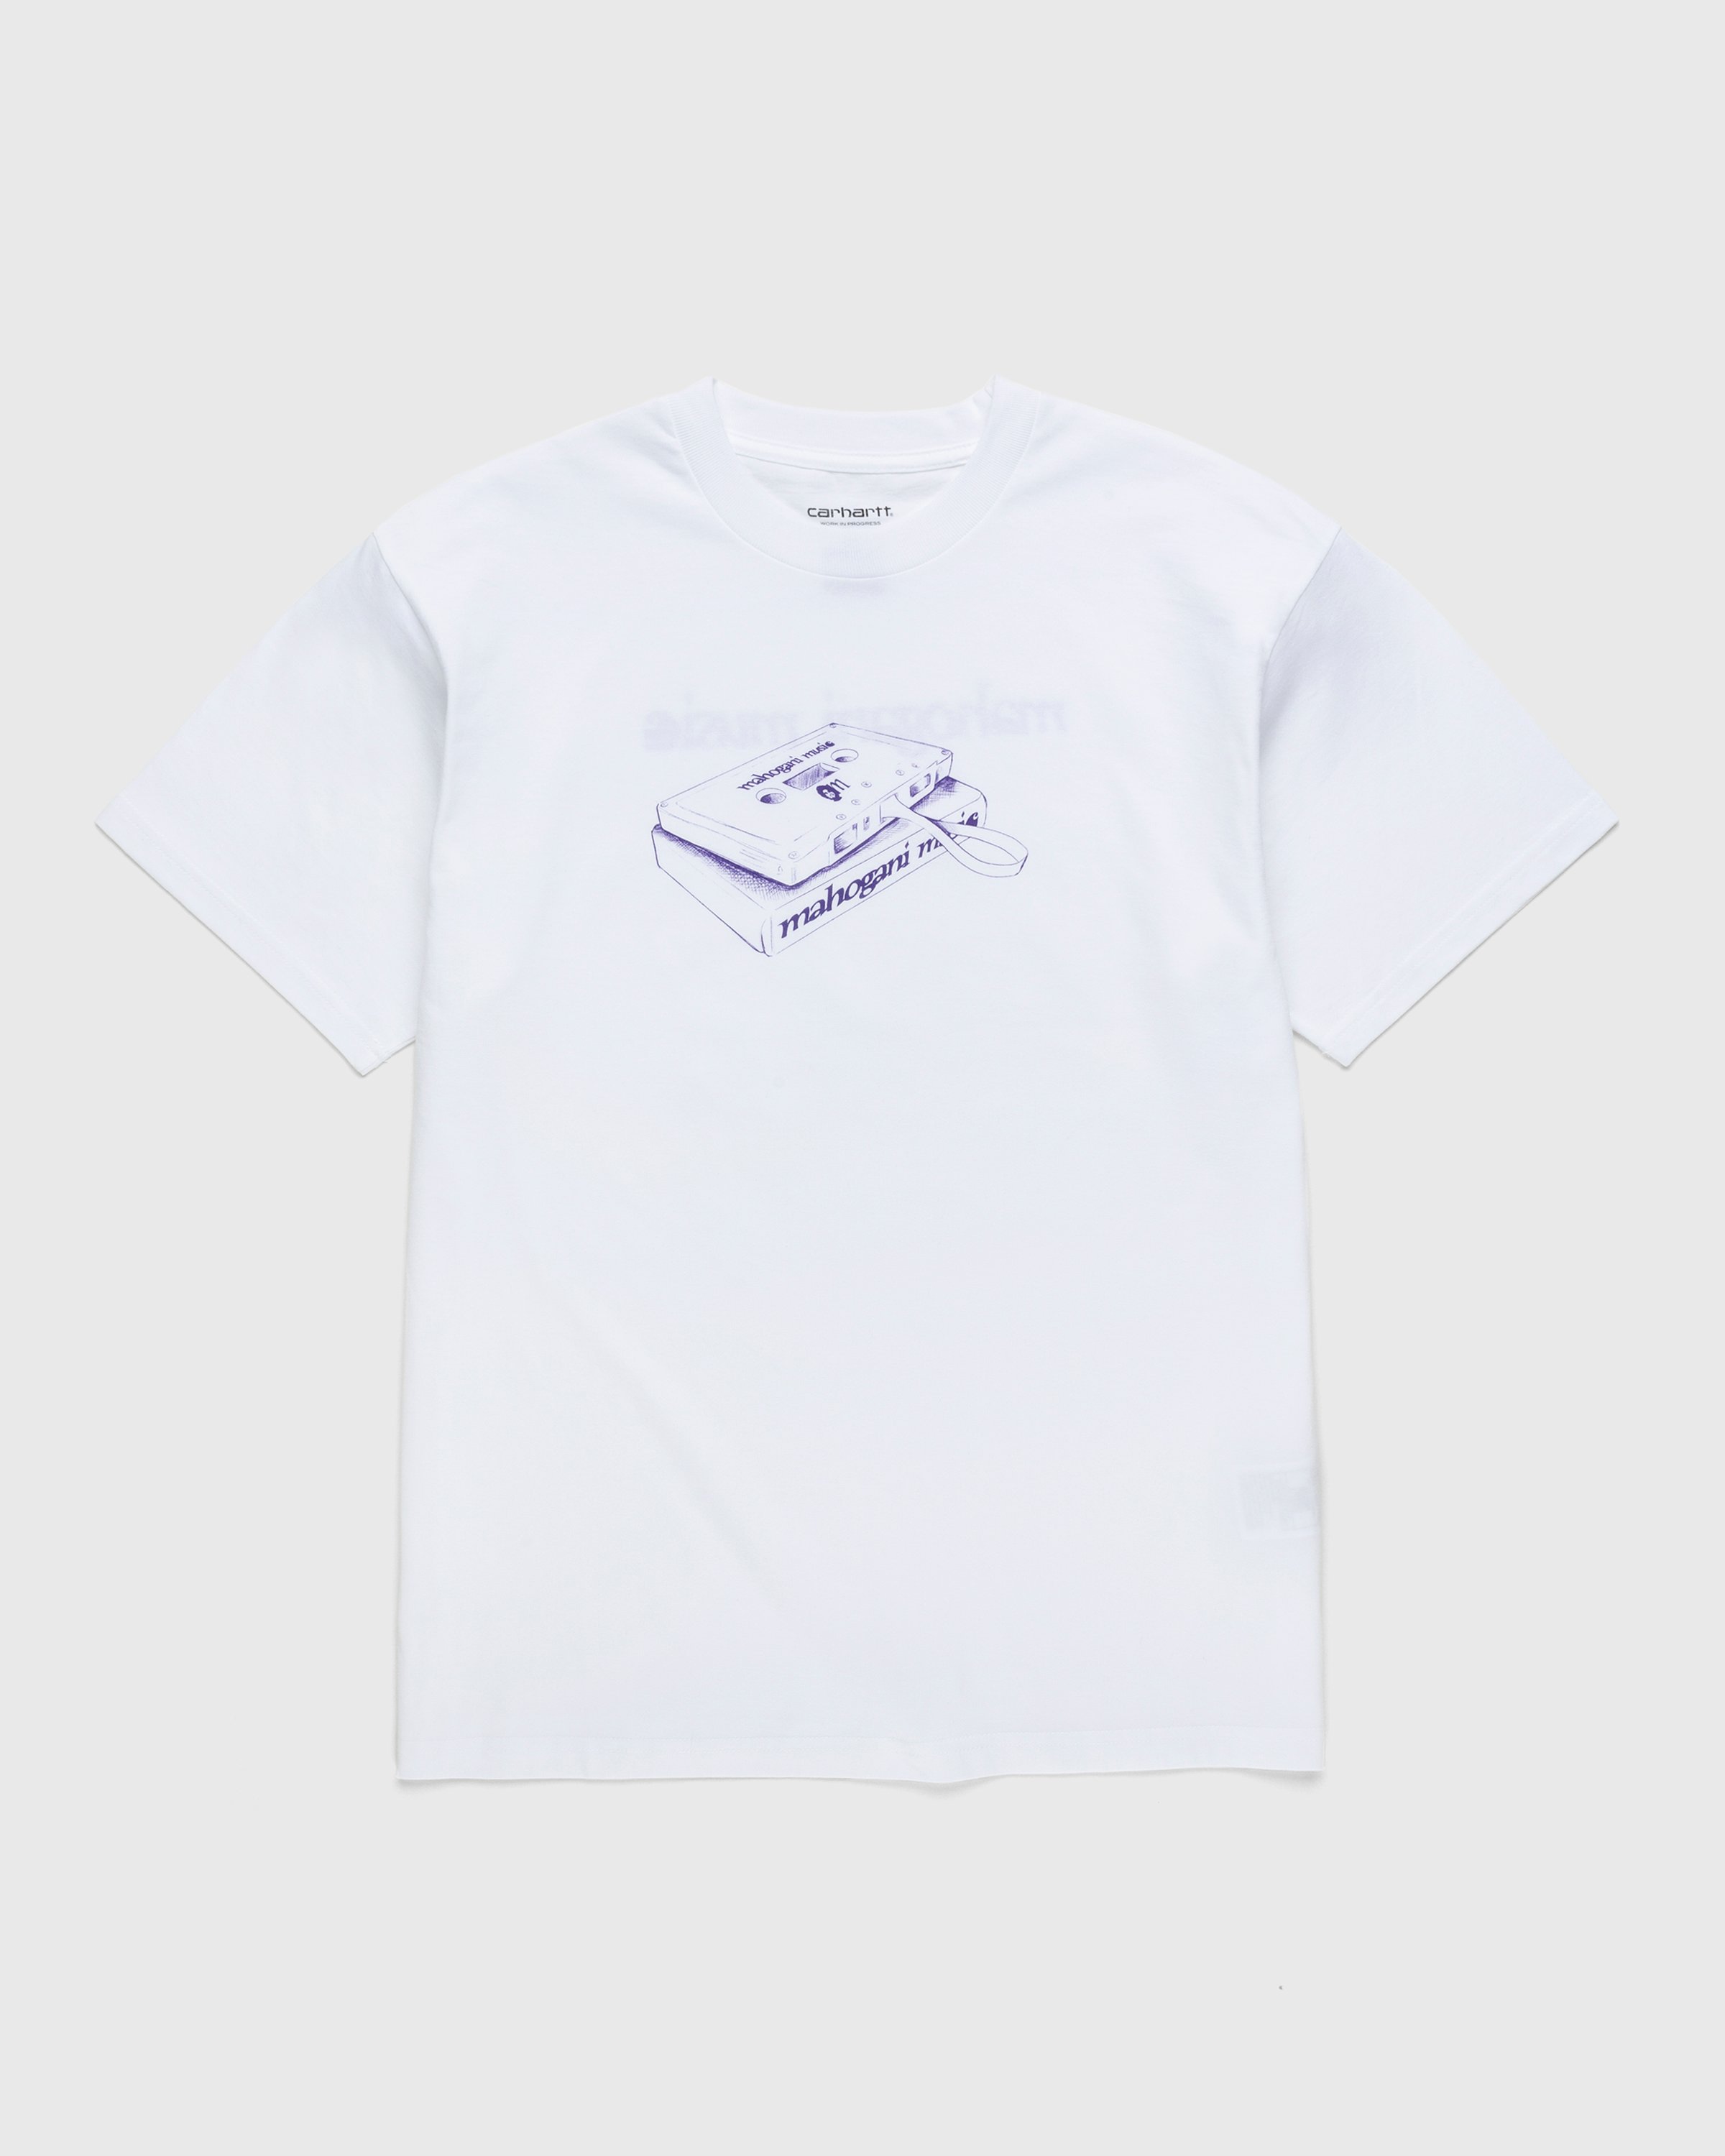 Carhartt WIP - Mahogani Music T-Shirt White/Purple - Clothing - White - Image 1